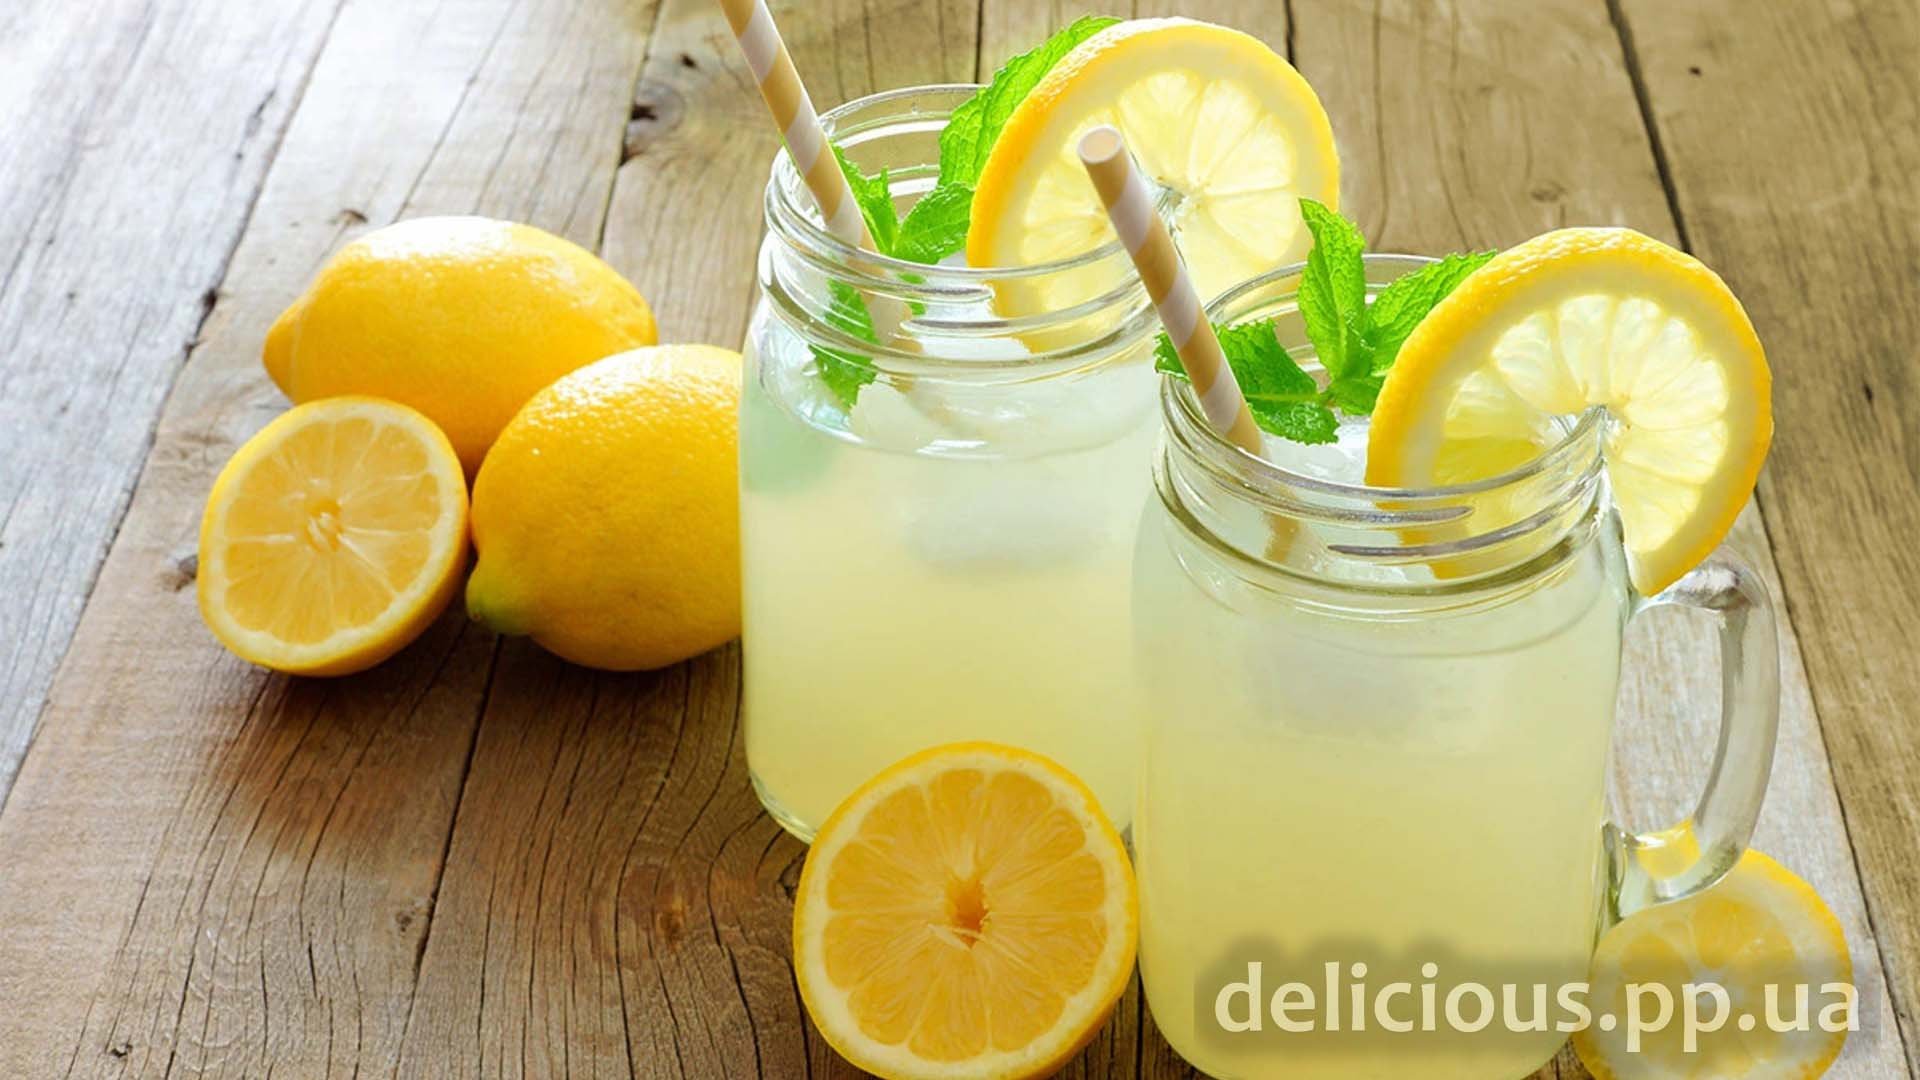 Как сделать вкусный Лимонад. Рецепт домашнего лимонада из апельсинов и лимона.